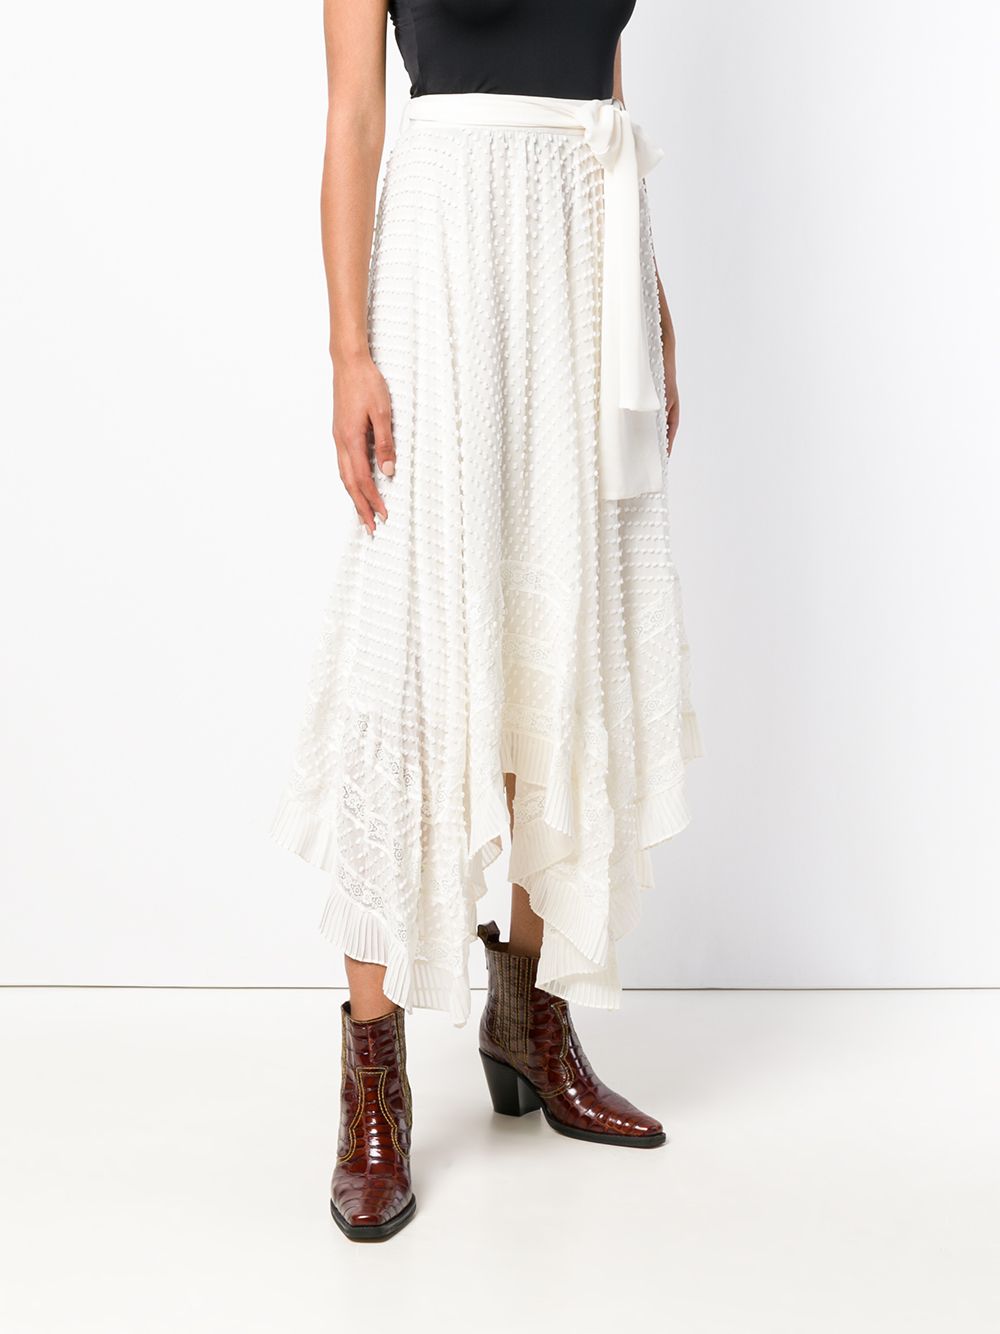 фото Zimmermann декорированная юбка асимметричного кроя